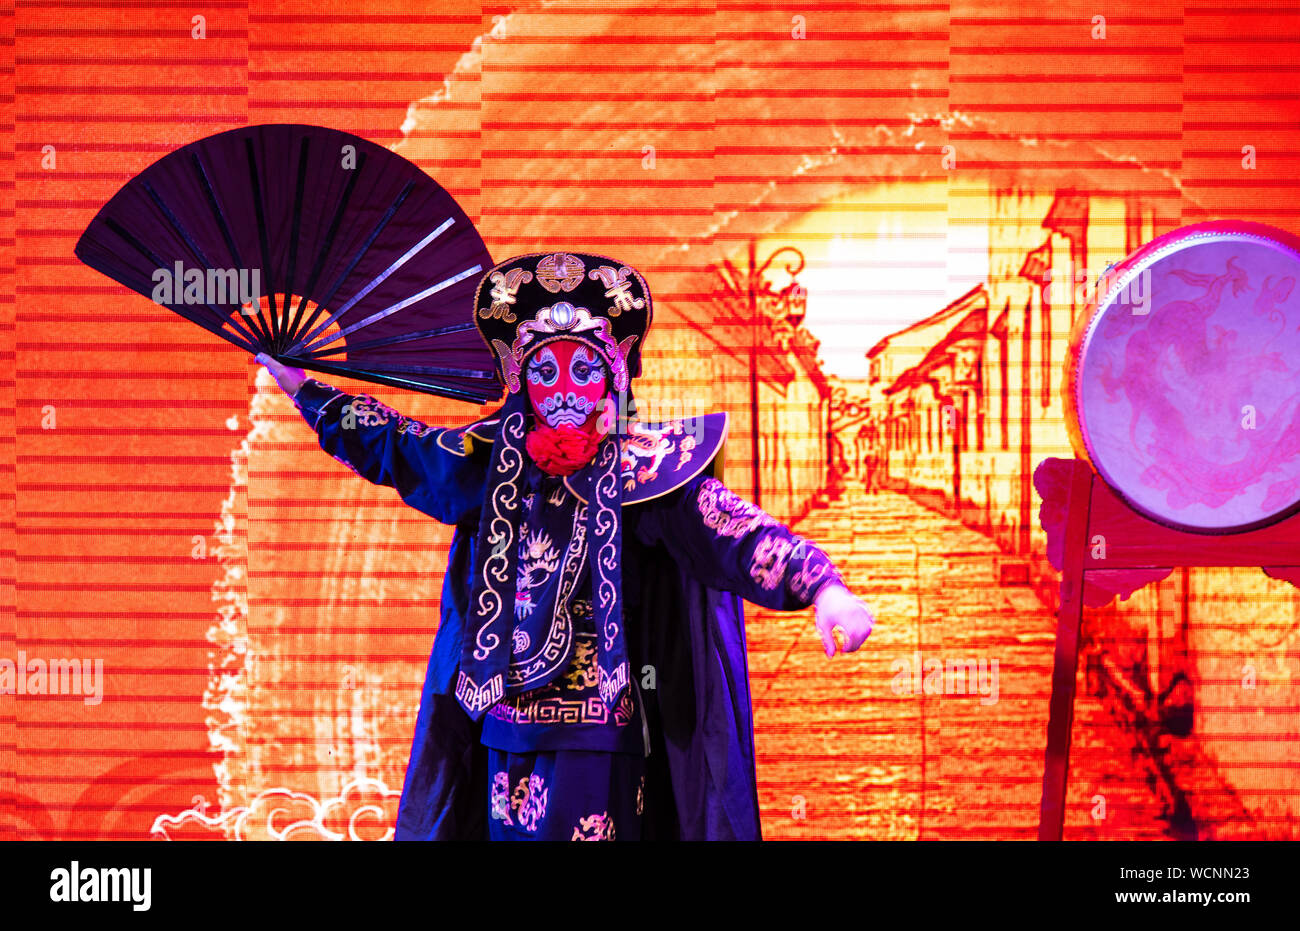 Chengdu, Chine - 26 juillet 2019 : modification de l'opéra théâtre chinois Sichuan stunt show performance sur scène à Chengdu en Chine Banque D'Images